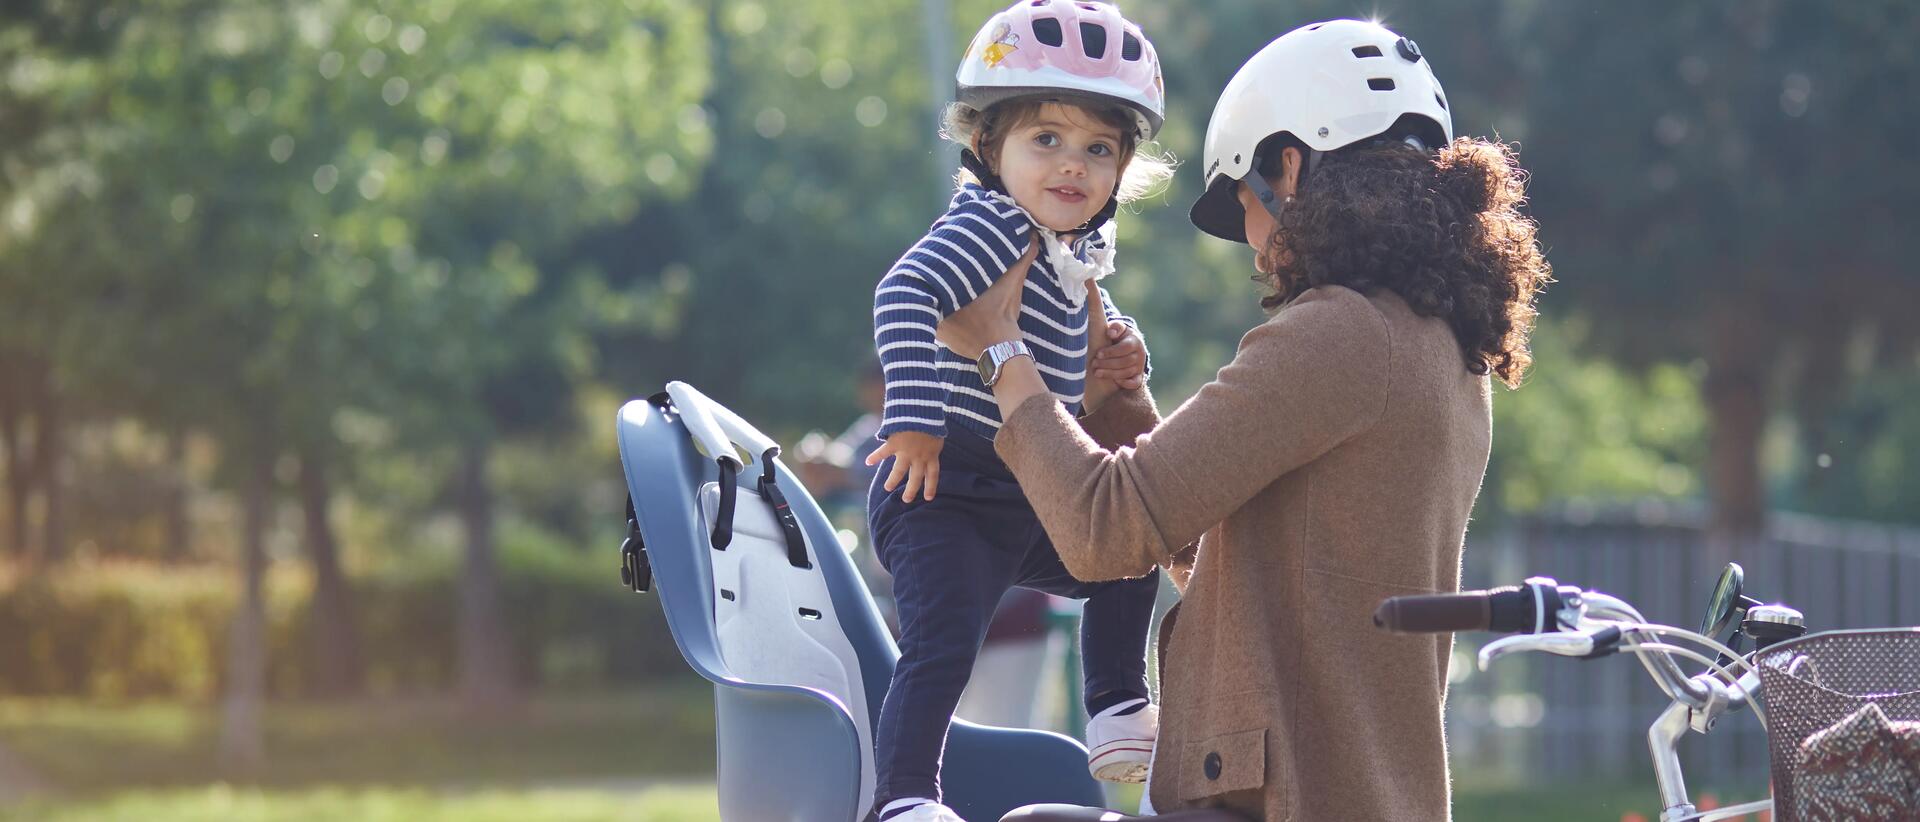 kobieta w kasku wkładająca dziecko do fotelika rowerowego